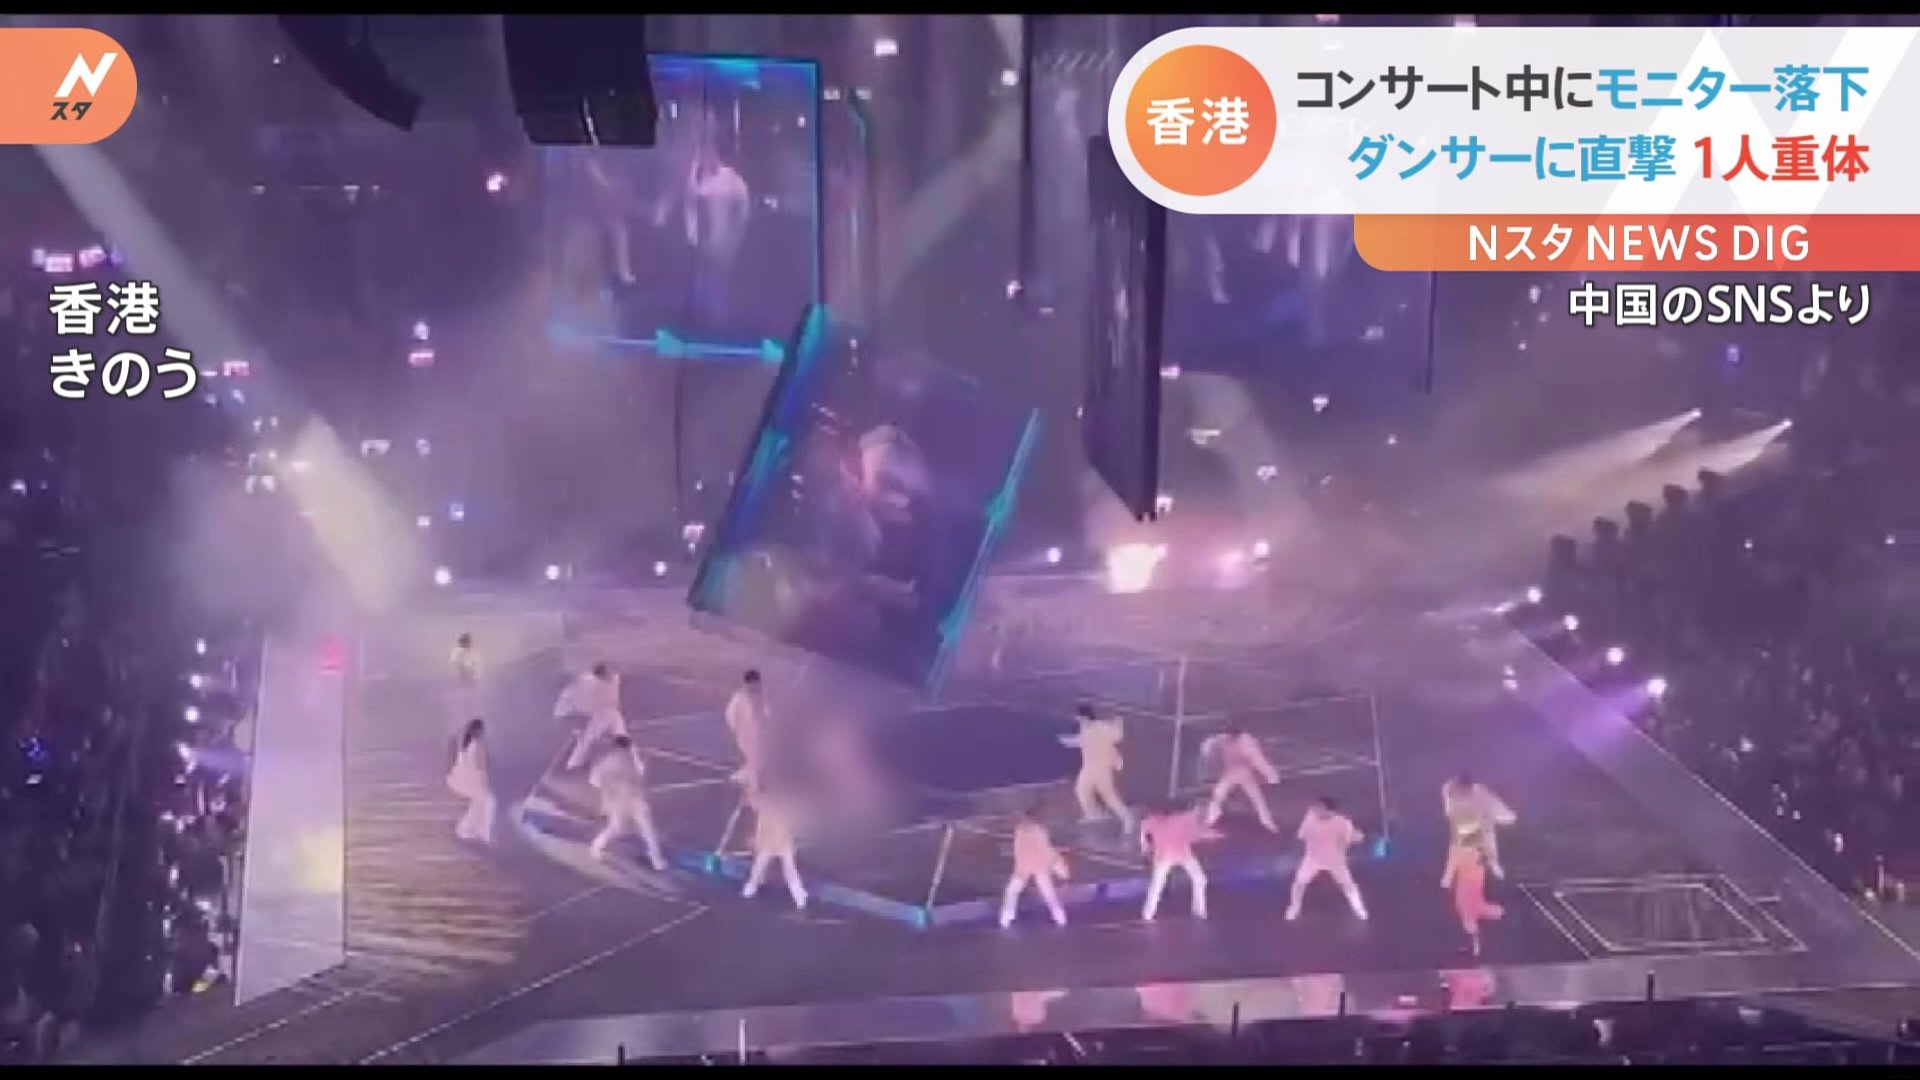 アイドルのライブでモニター落下 直撃したダンサーが重体 香港人気グループ Mirror Tbs News Dig